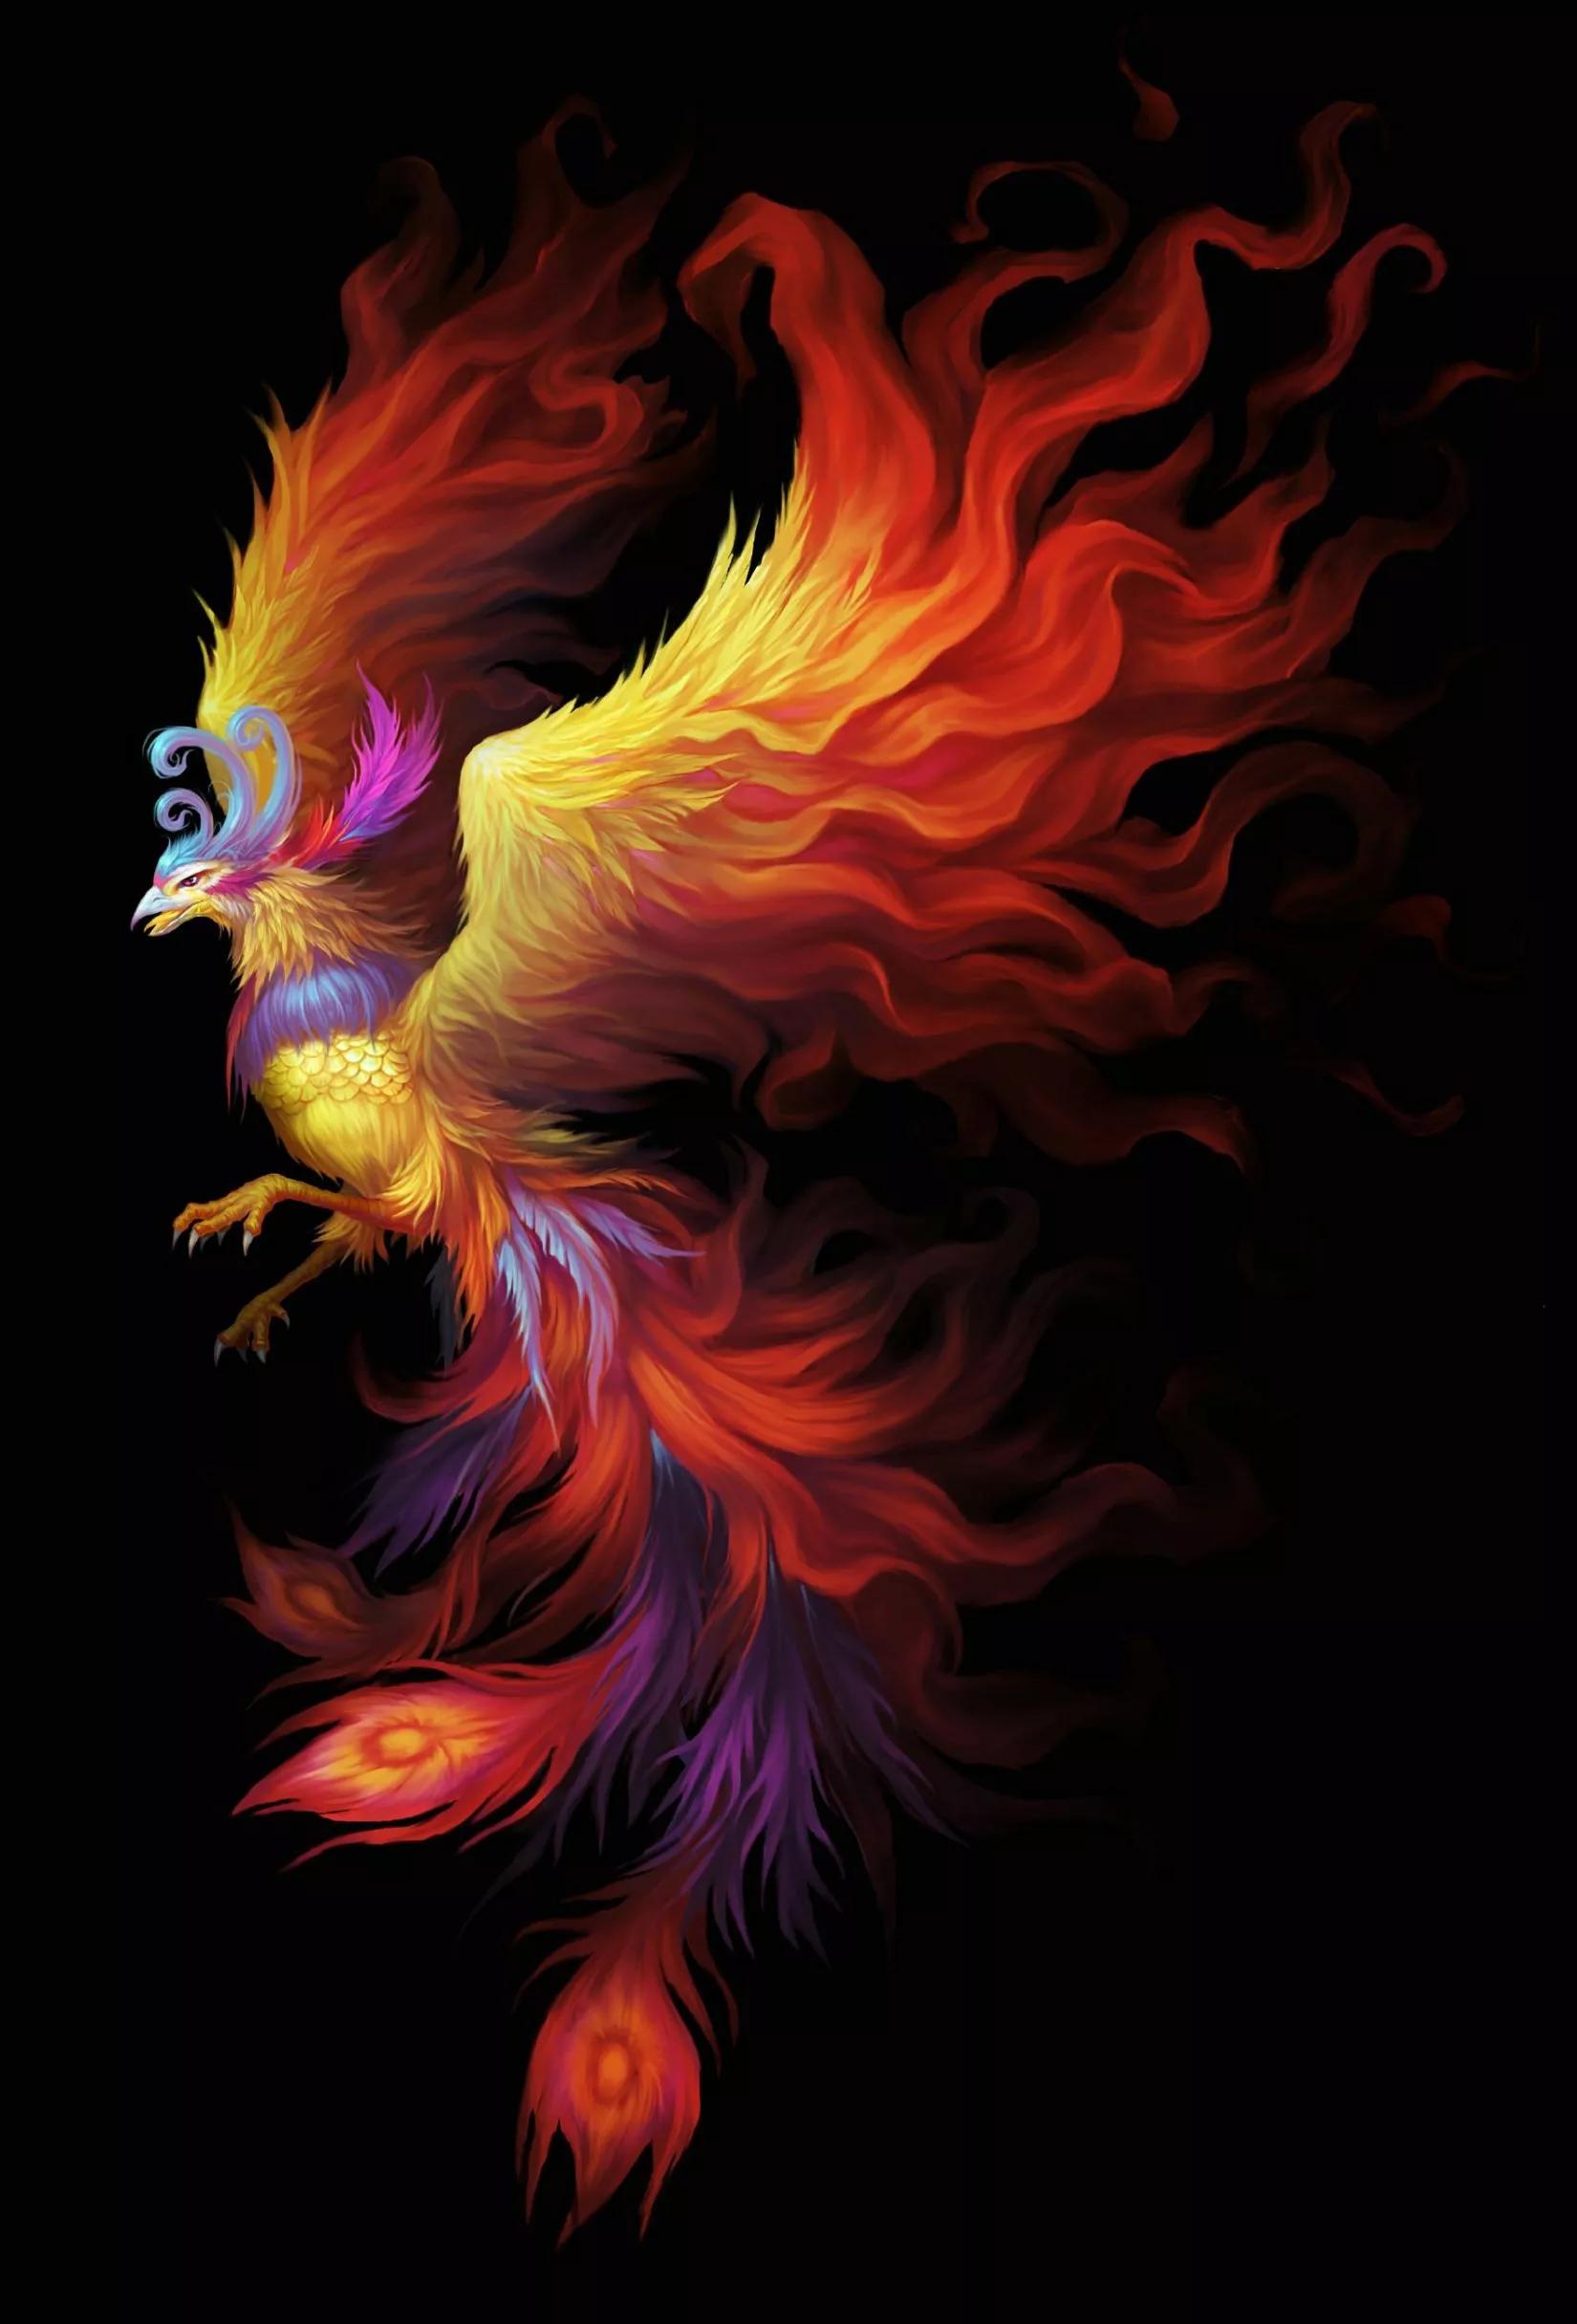 Rebirth from ashes, auspicious phoenix picture appreciation - iMedia